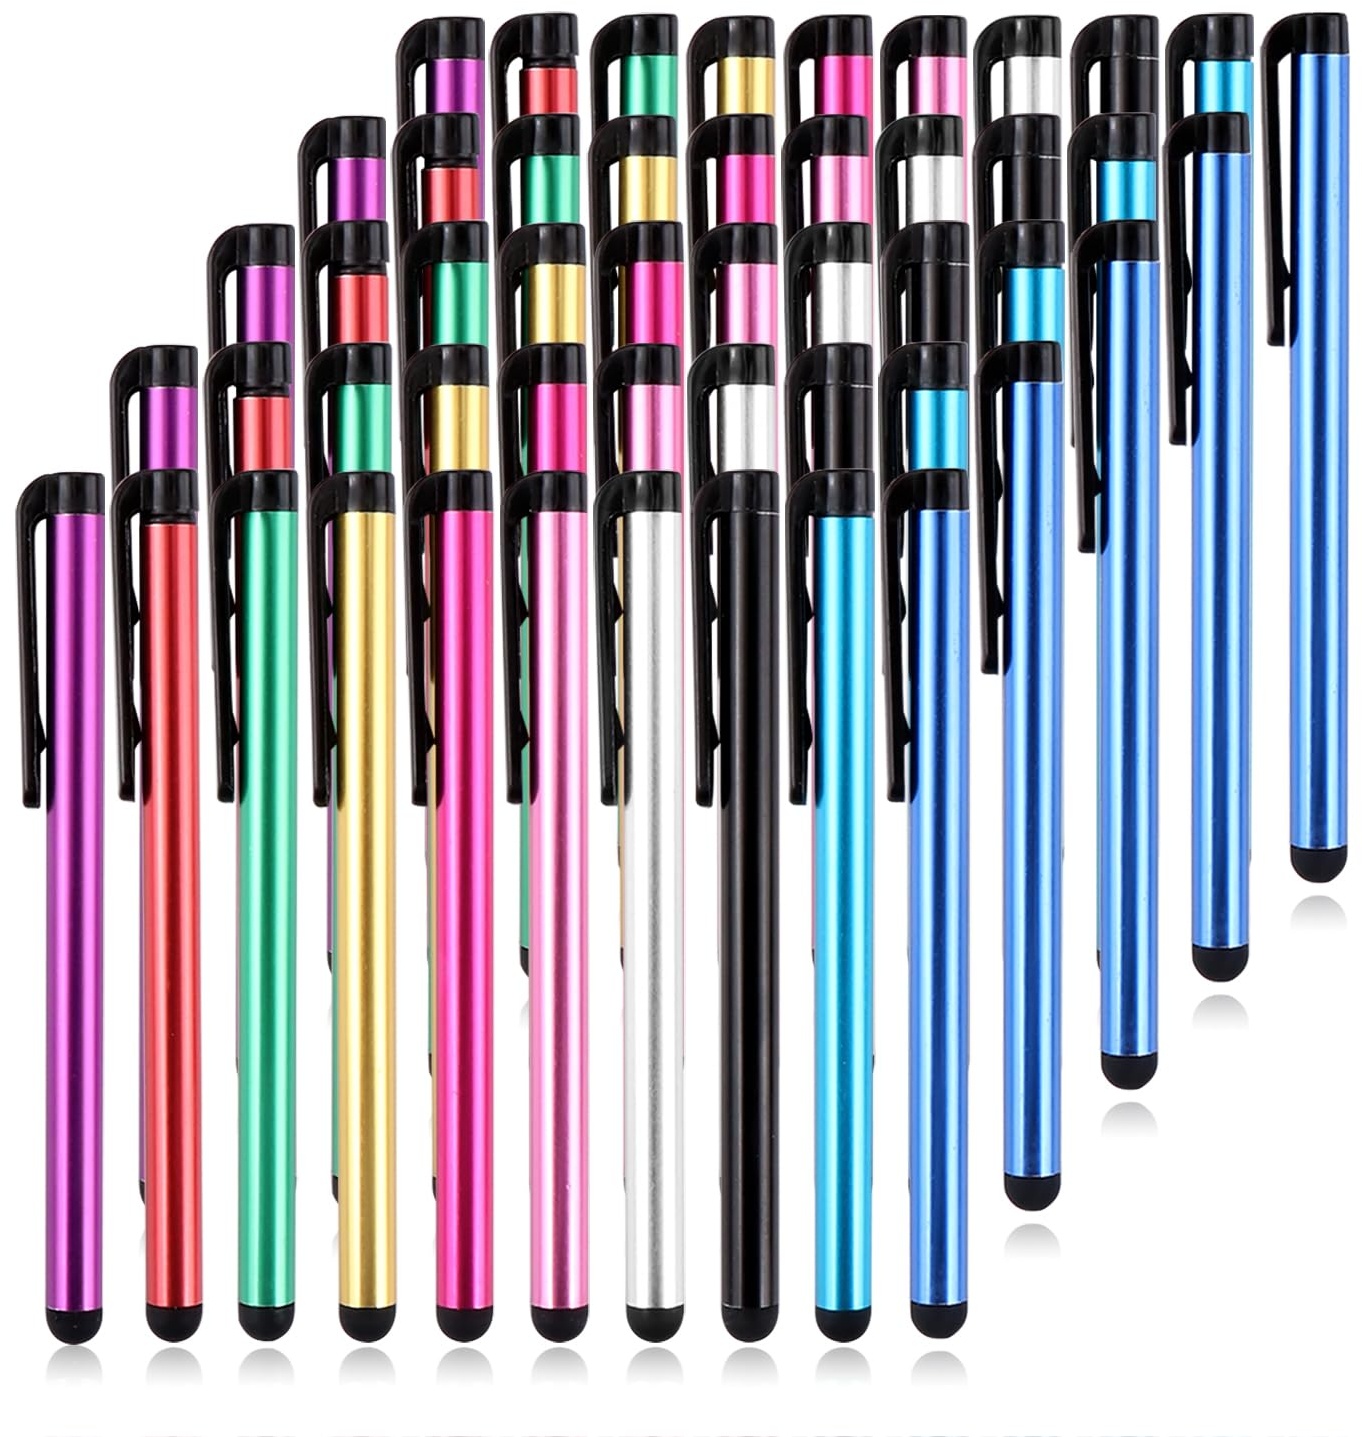 Eingabestift 50 Stück Touchscreen Stift Stylus Pen für Touch Screens Geräte, für Tablets iPad Mini Pro Smartphones Huawei Samsung Galaxy 10 Farben